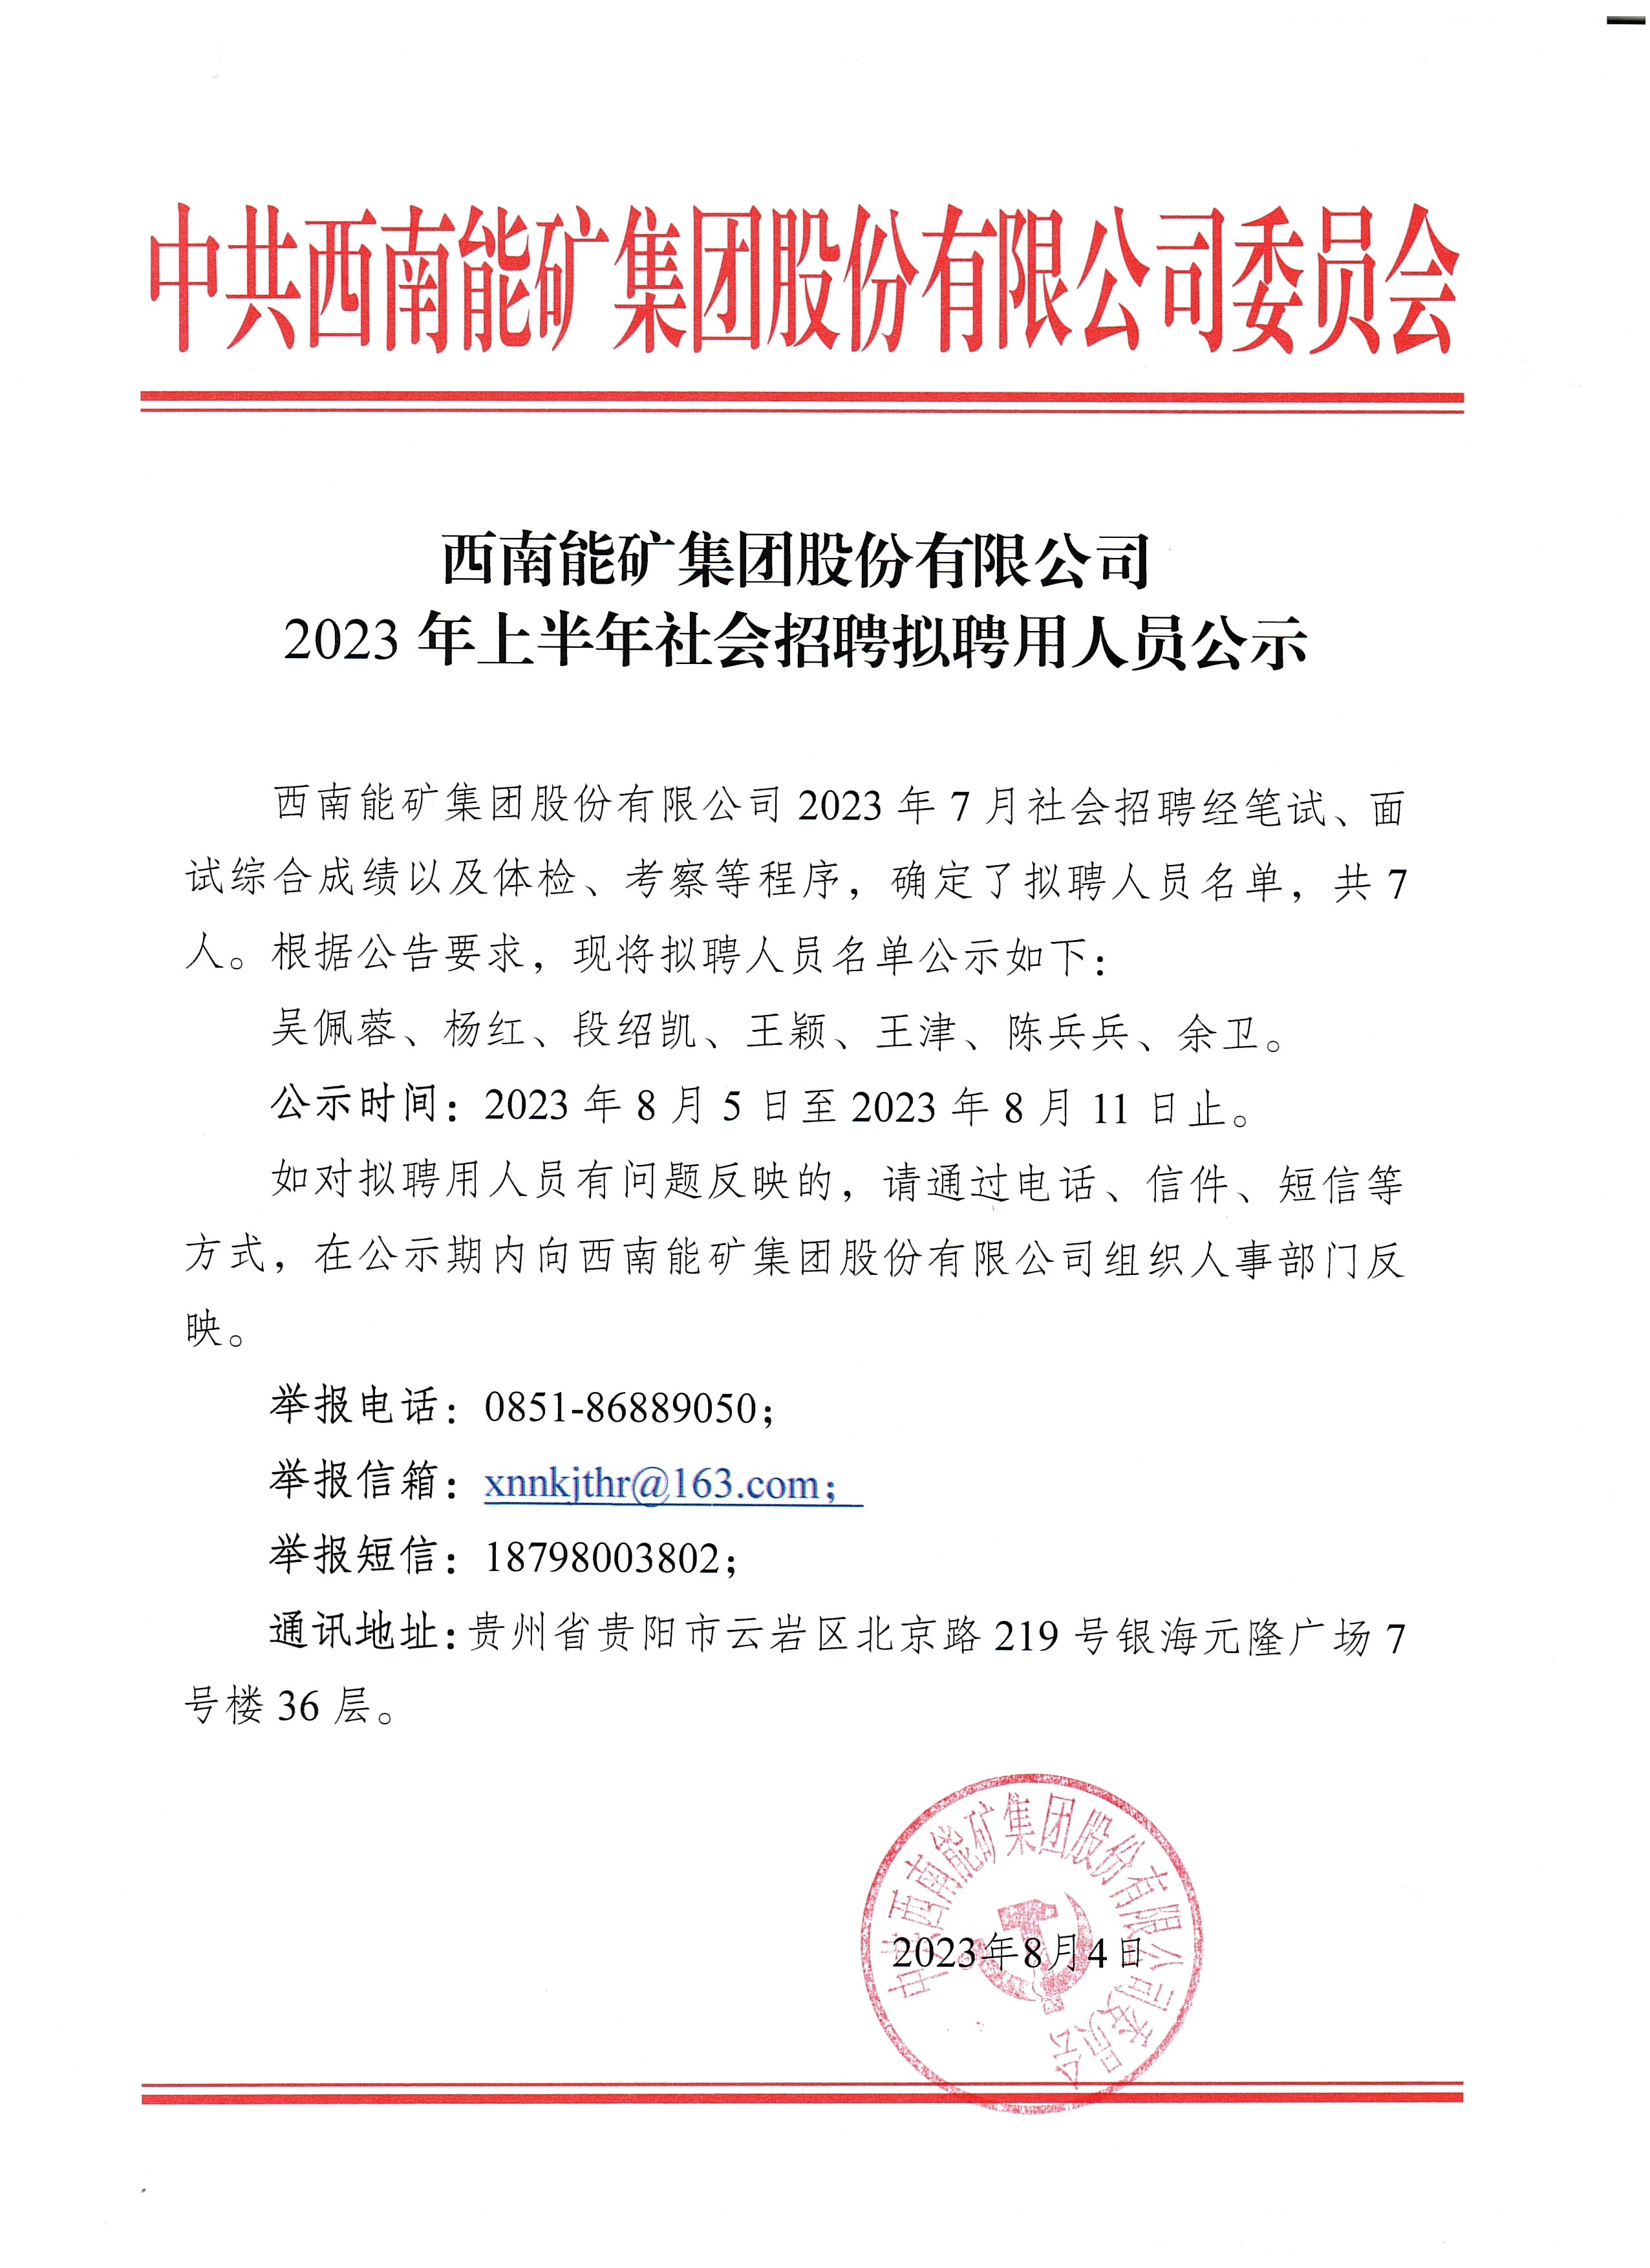 西南能矿集团2023年上半年社会招聘拟聘用人员公示.jpg